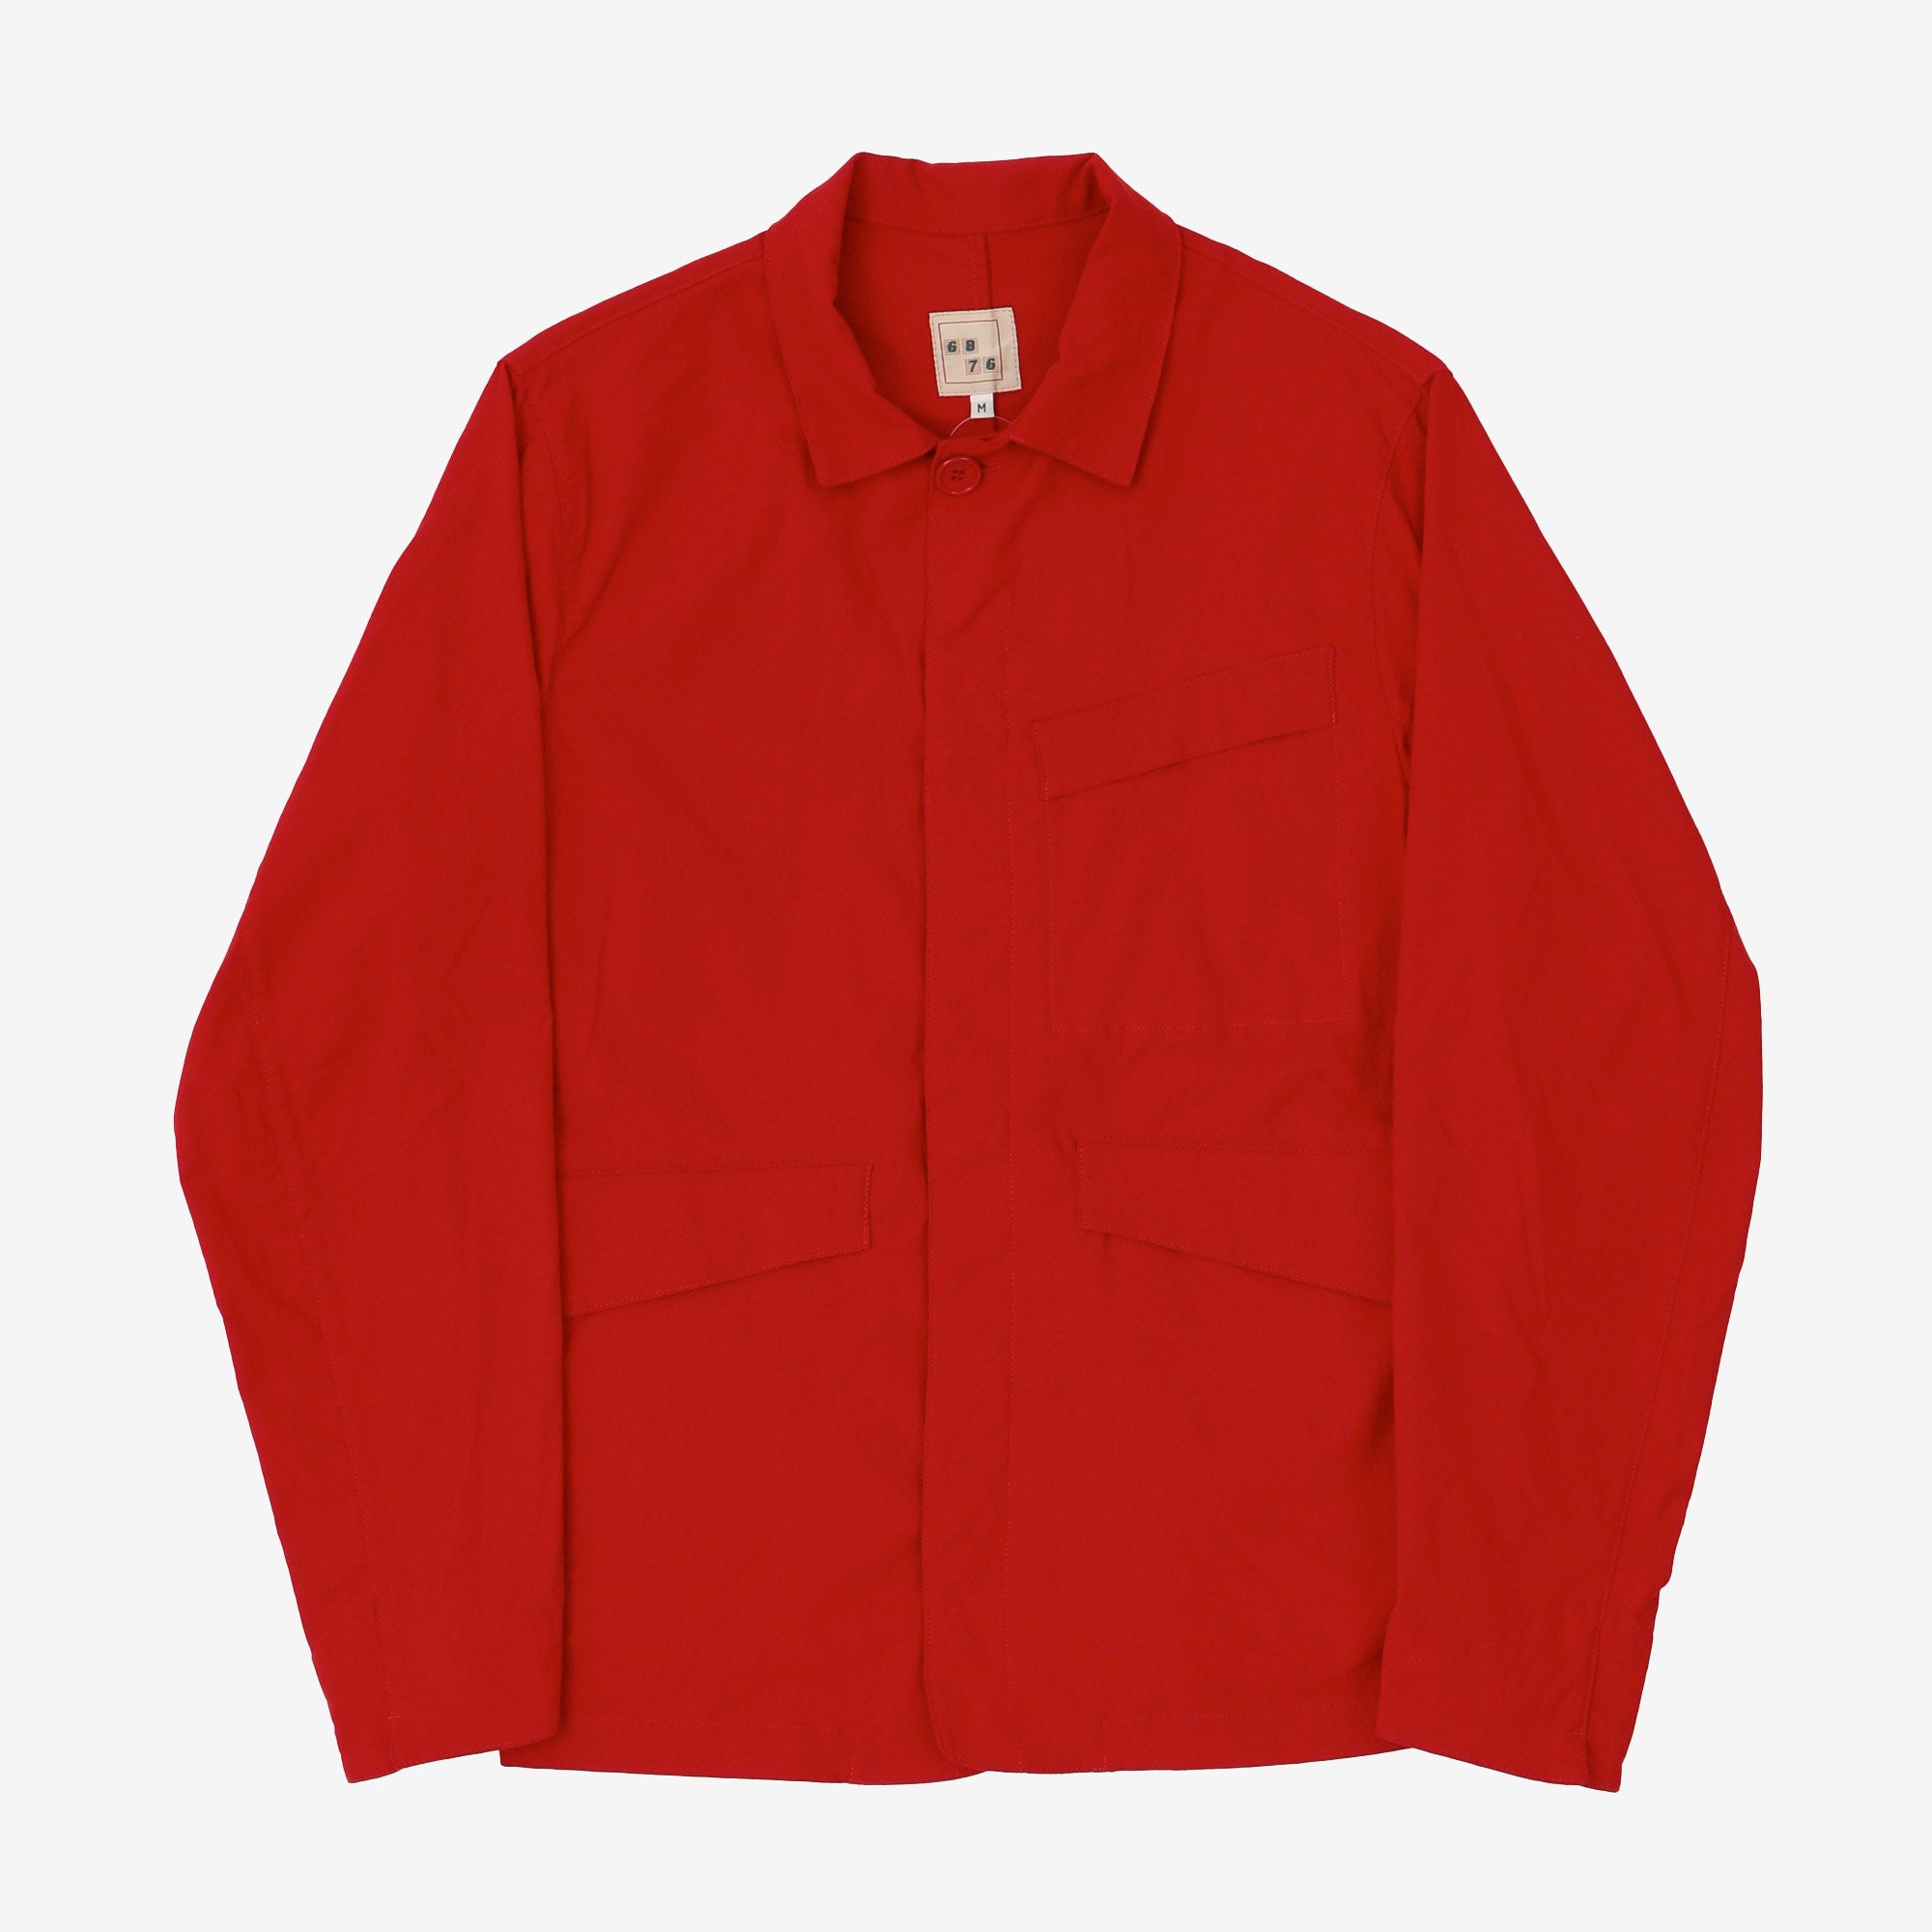 Craigowl Workwear Jacket